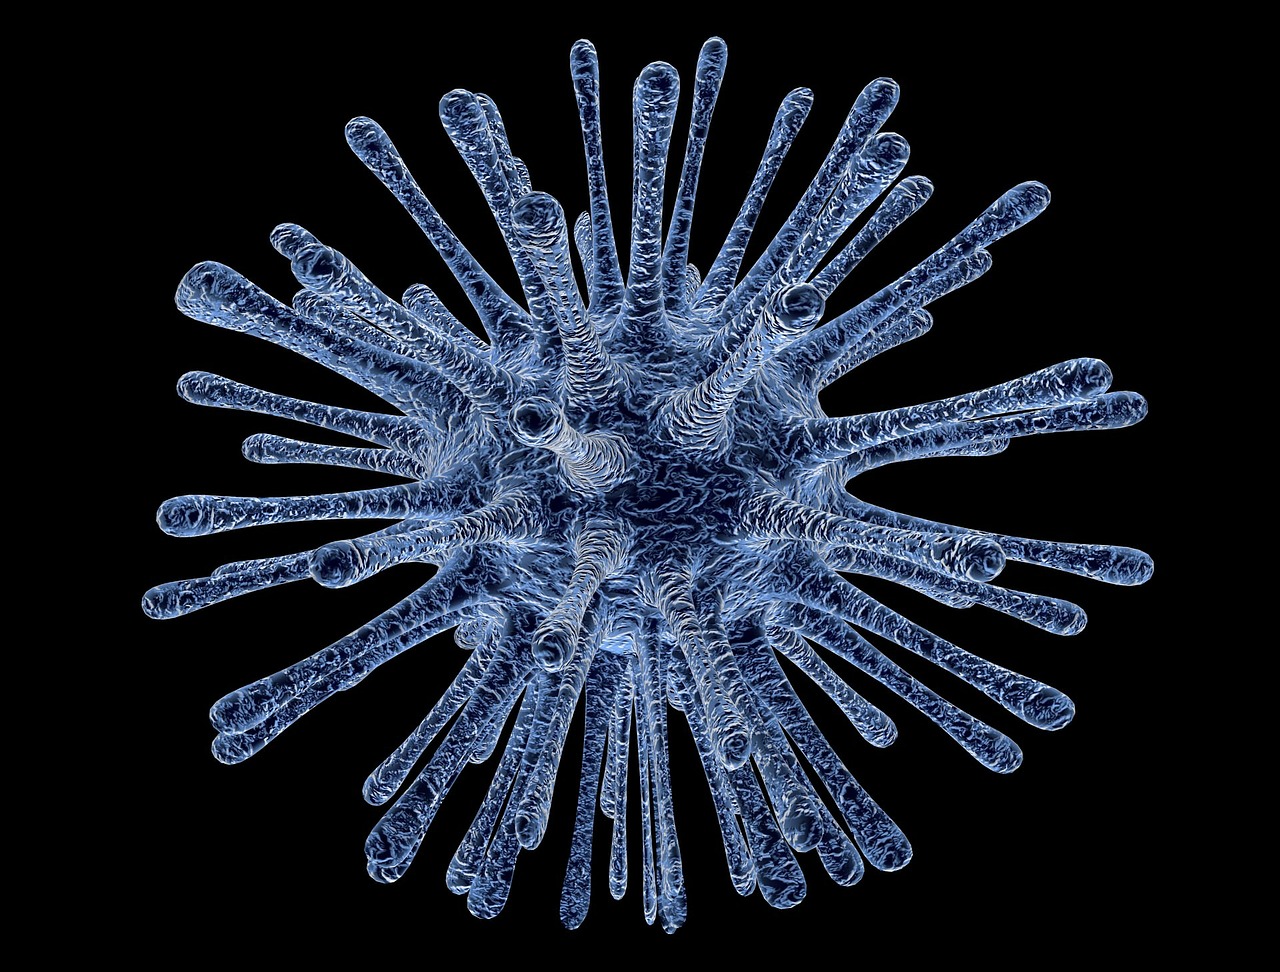 virus-infected-cells-213708_1280.jpg